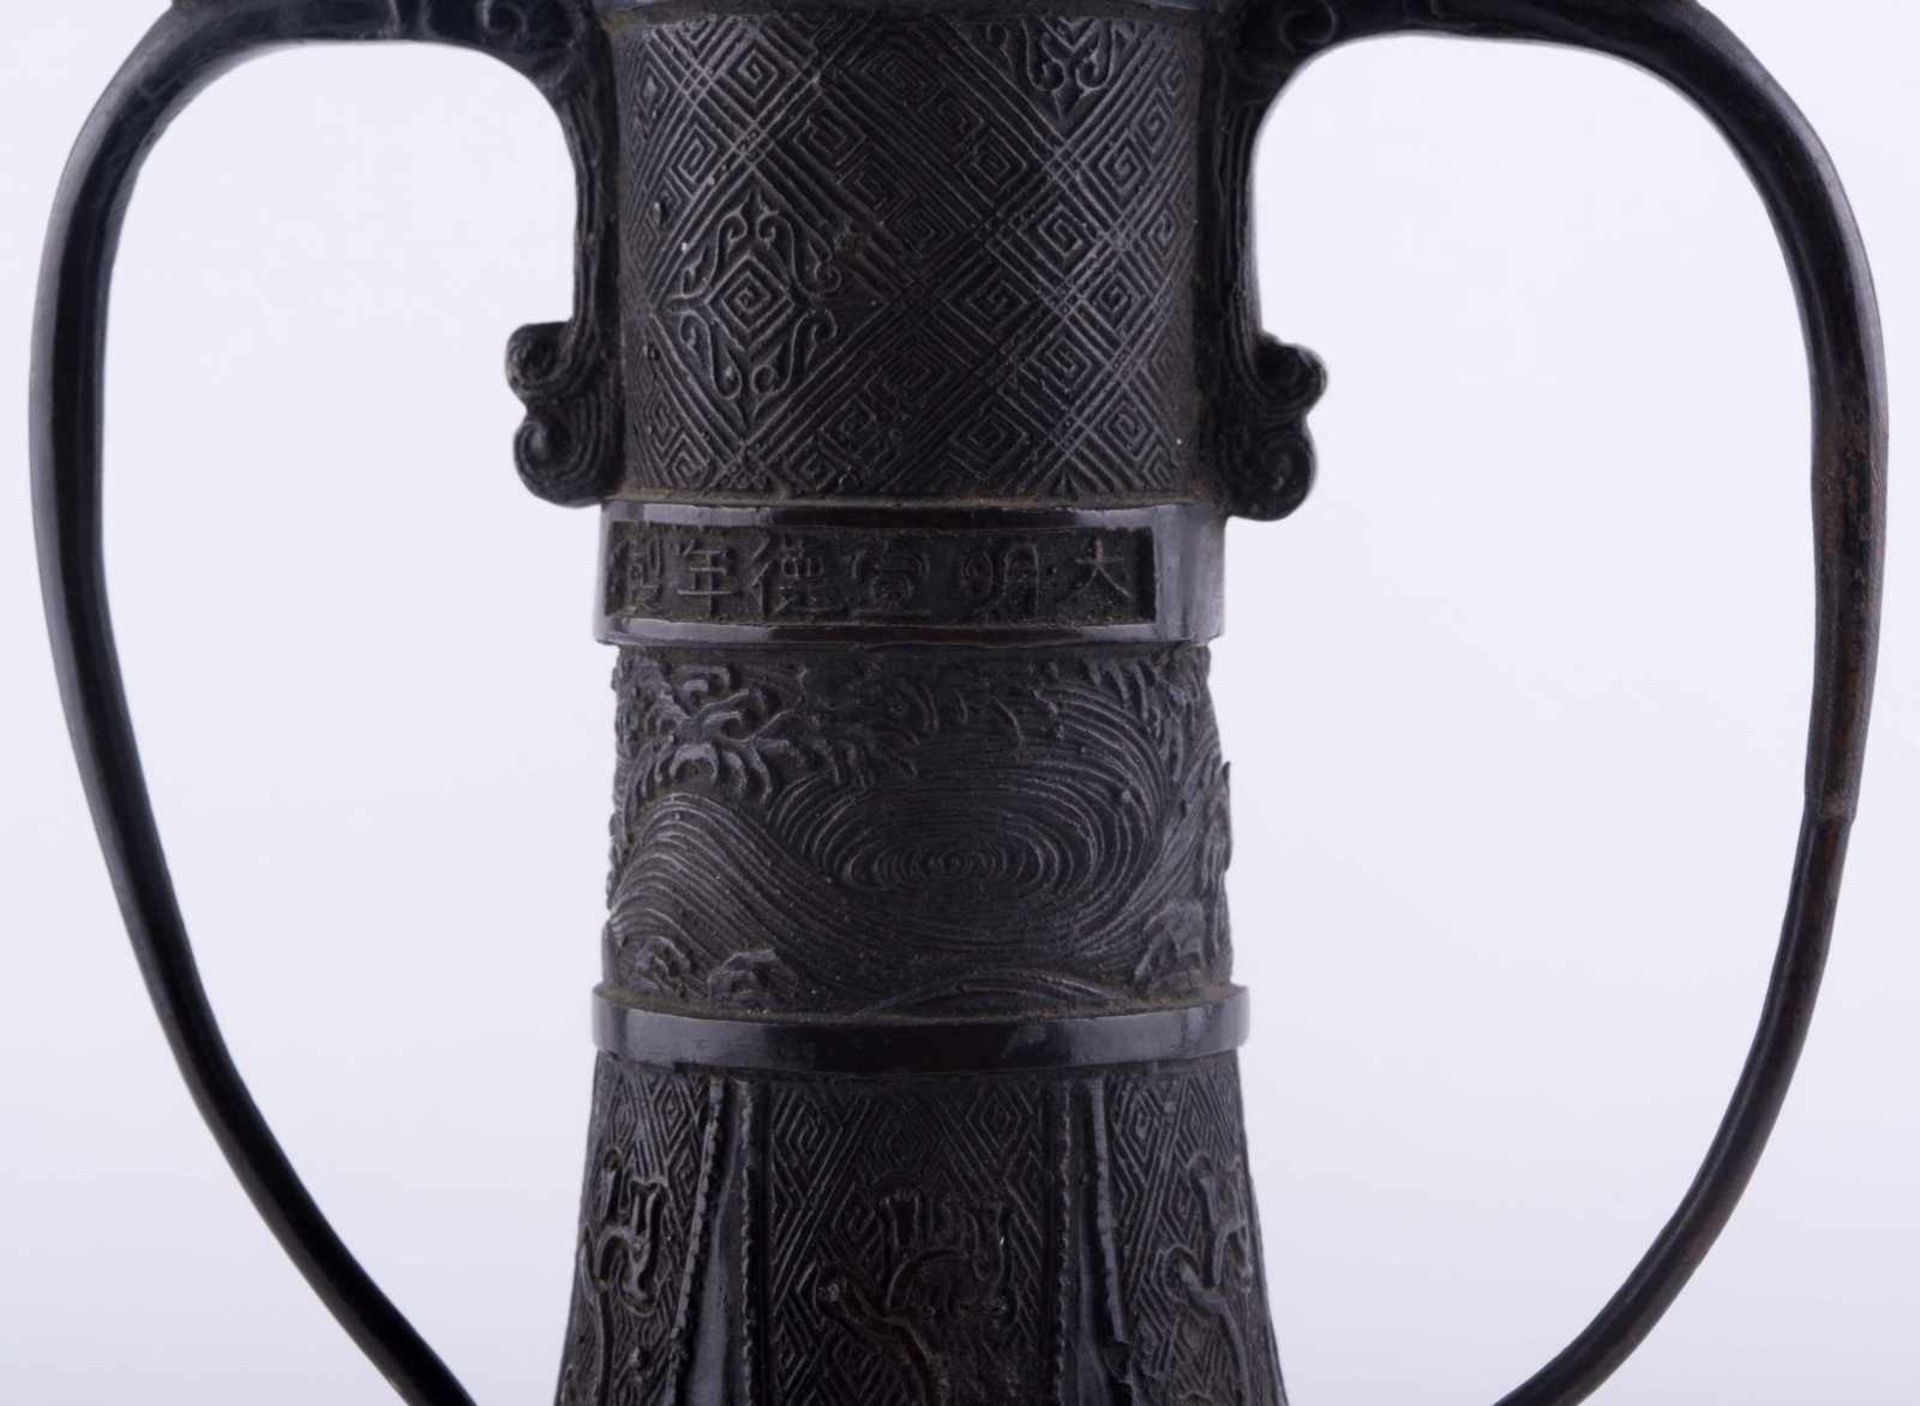 Vase China 18./19. Jhd. / Vase, China 18th/19th century Bronze, mit seitlichen Handhaben, - Image 2 of 4